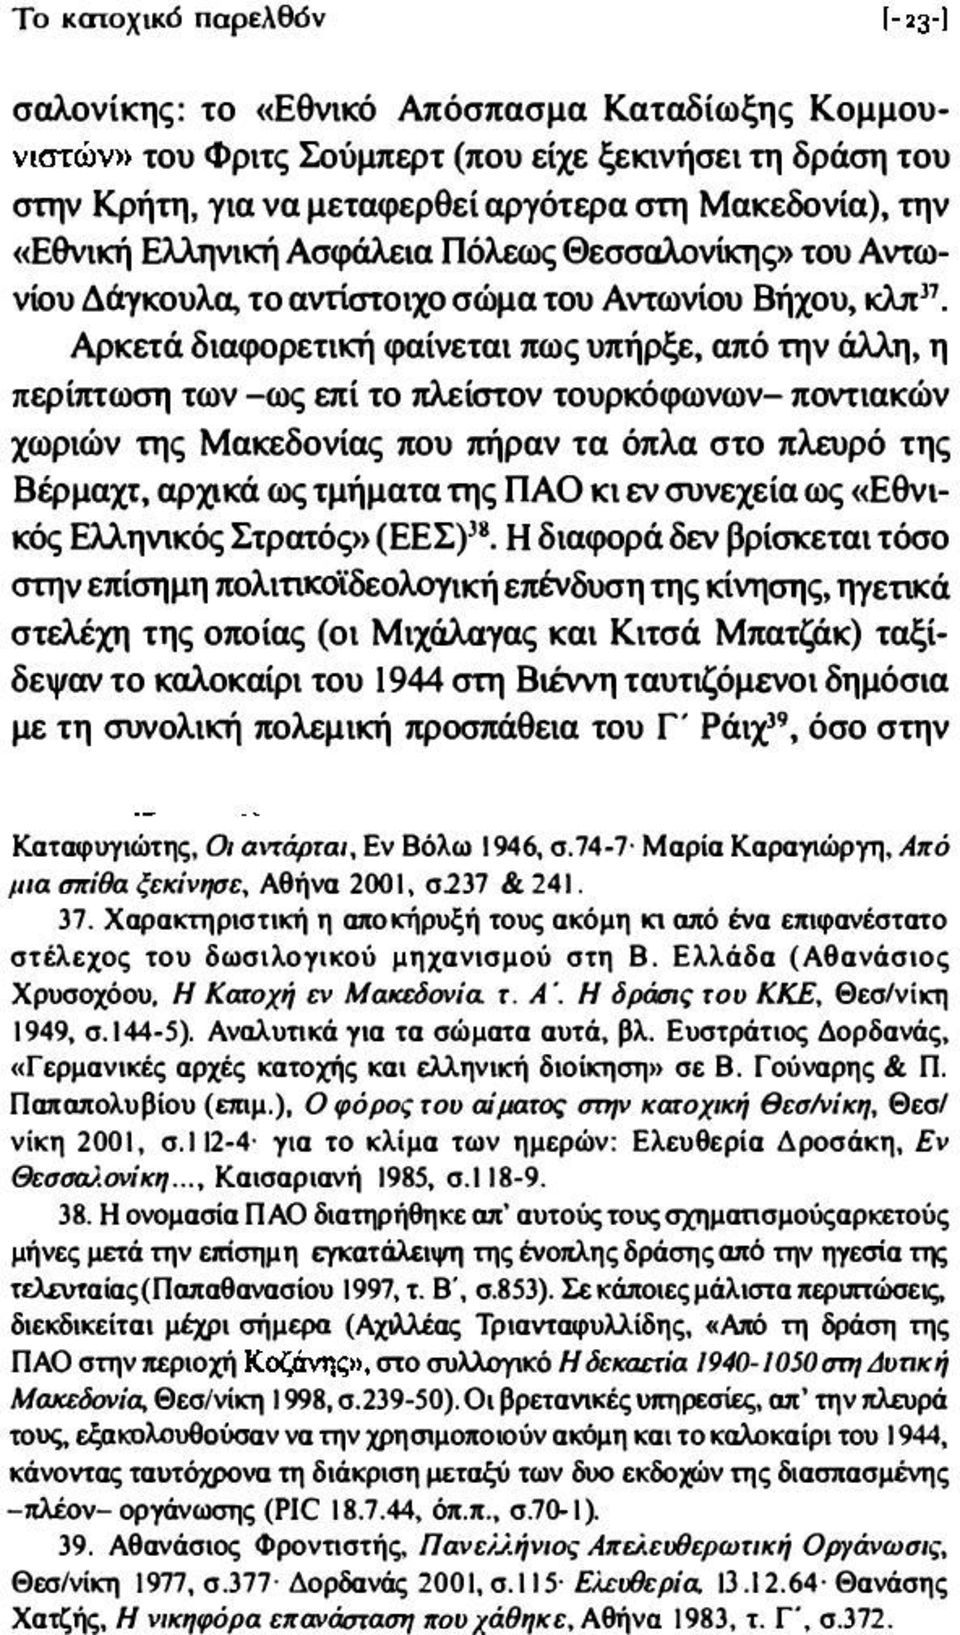 π11, Αρκετά διαφορετική φαίνεται πως υπήρξε, από την άλλη, η περίπτωση των -ως επί το πλείστον τουρκόφωνων- ποντιακών χωριών της Μακεδονίας που πήραν τα όπλα στο πλευρό της Βέρμαχτ,αρχικά ως τμήματα